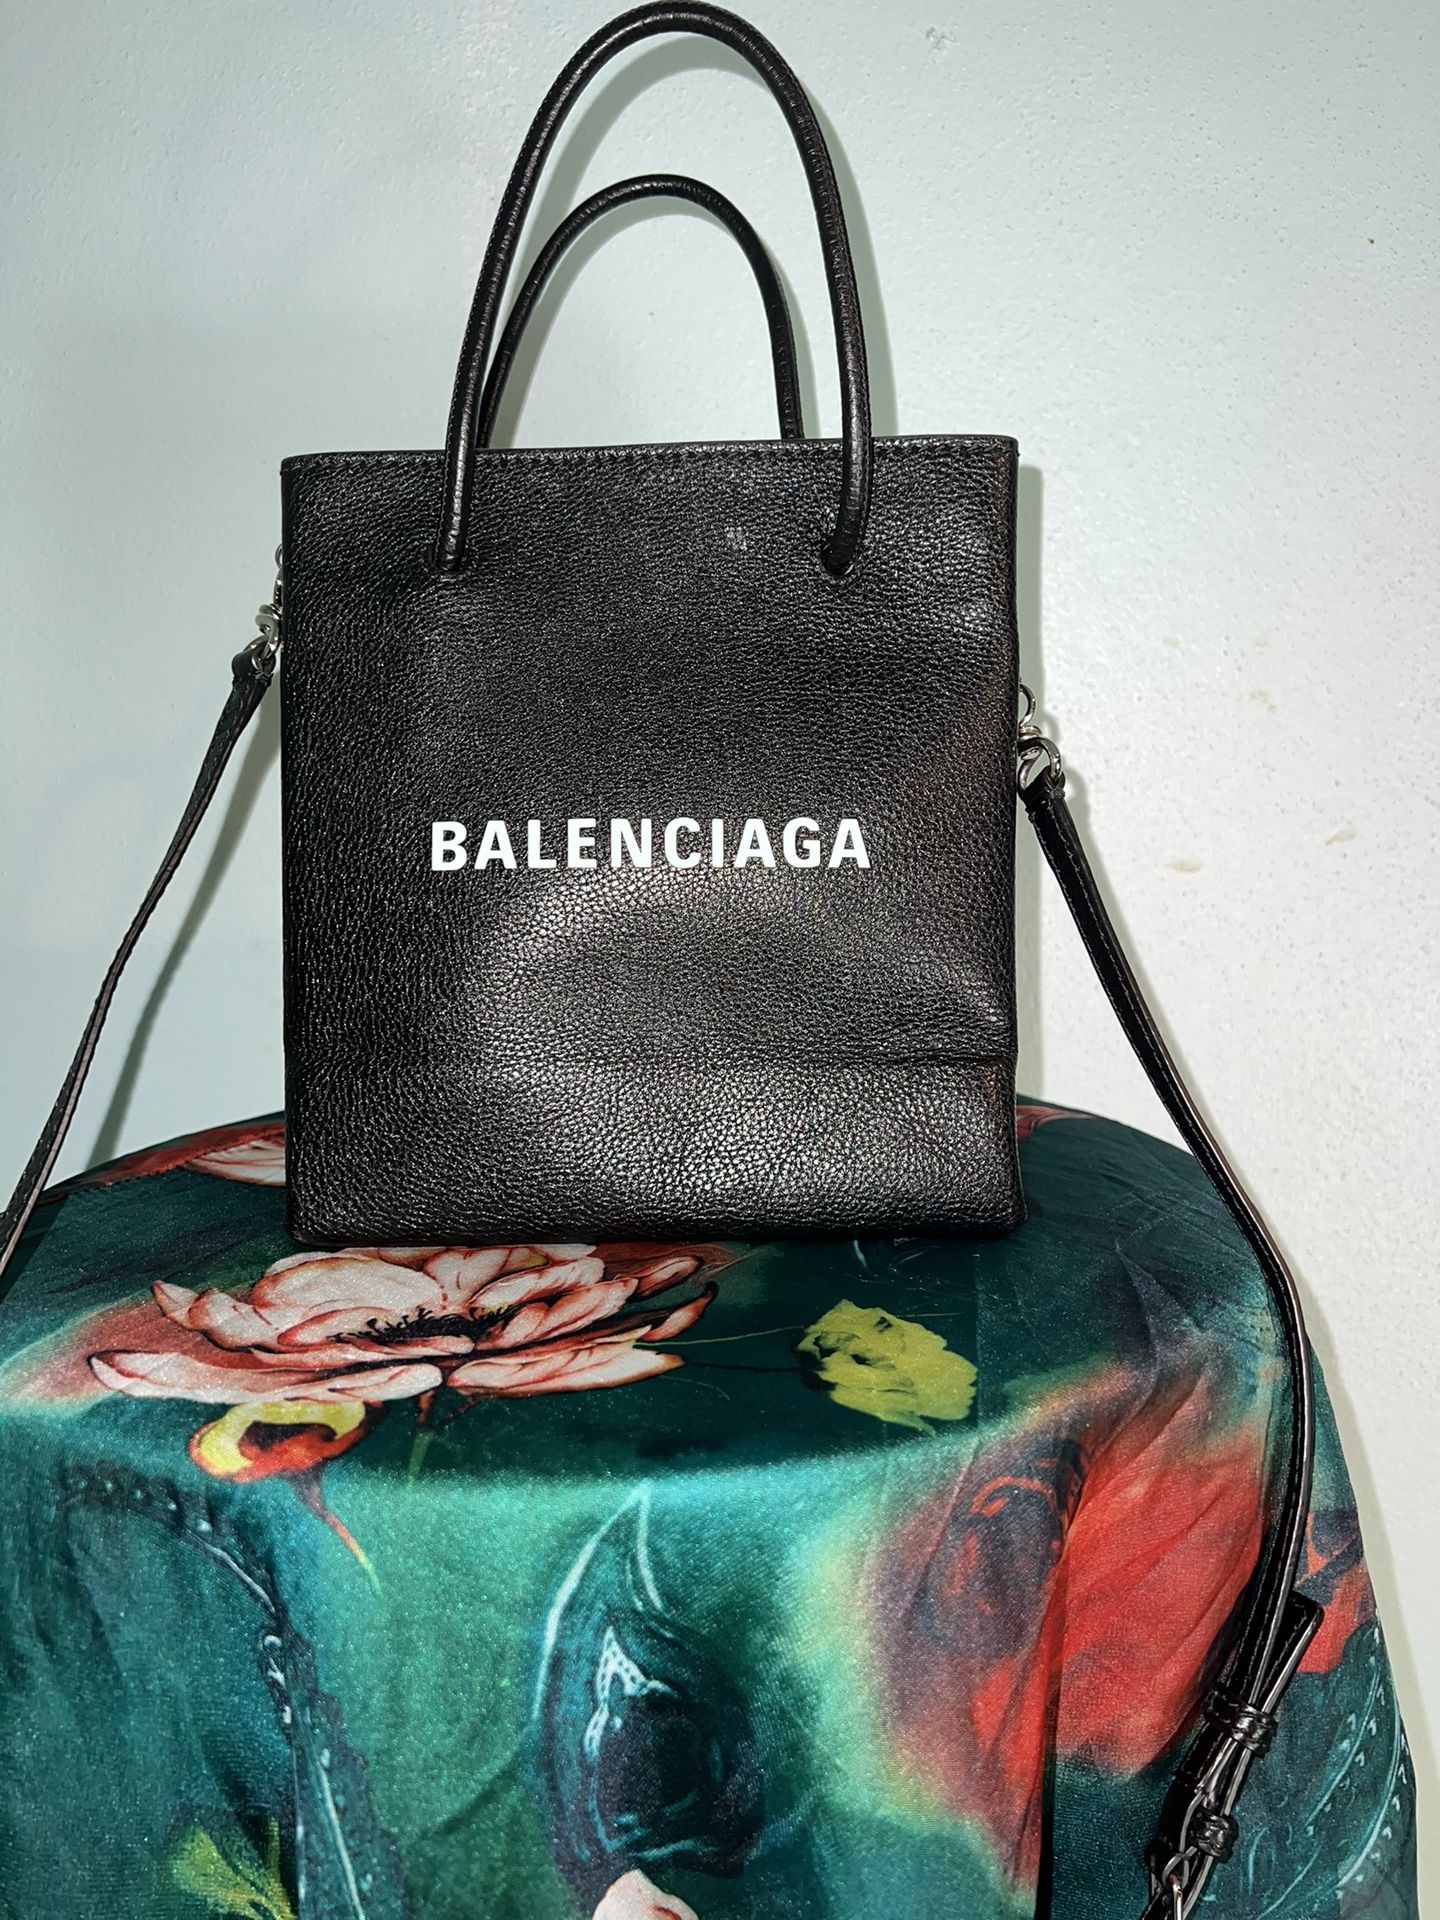 Balenciaga (Make Offer )Crossbody Or Handbag Shopping Bag Tote